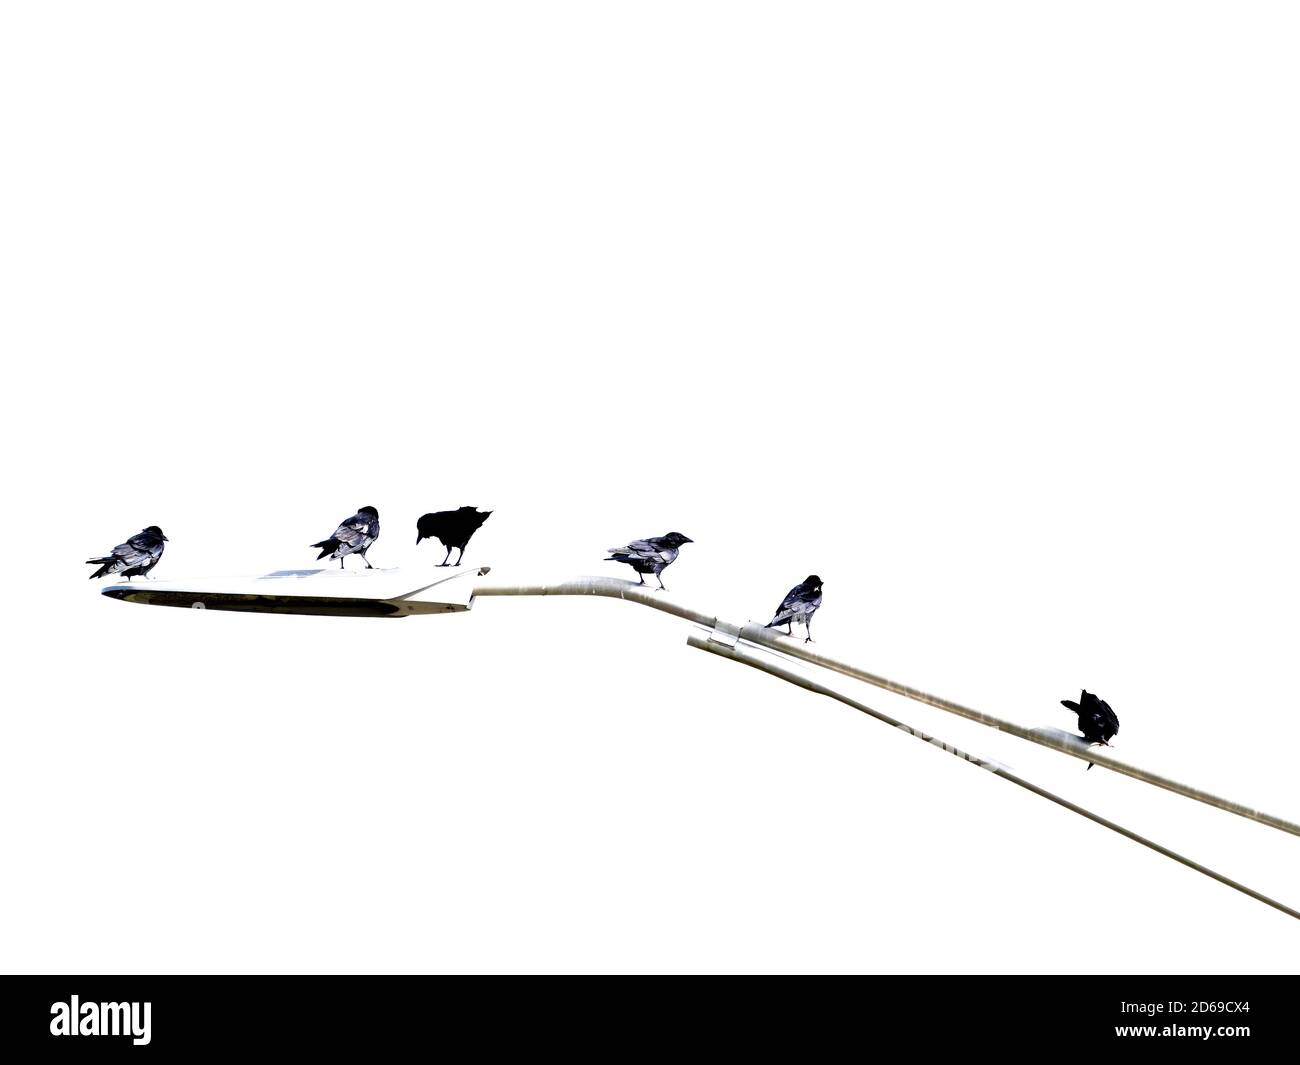 Imagen en blanco y negro de pájaros sentados en una calzada poste de luz Foto de stock